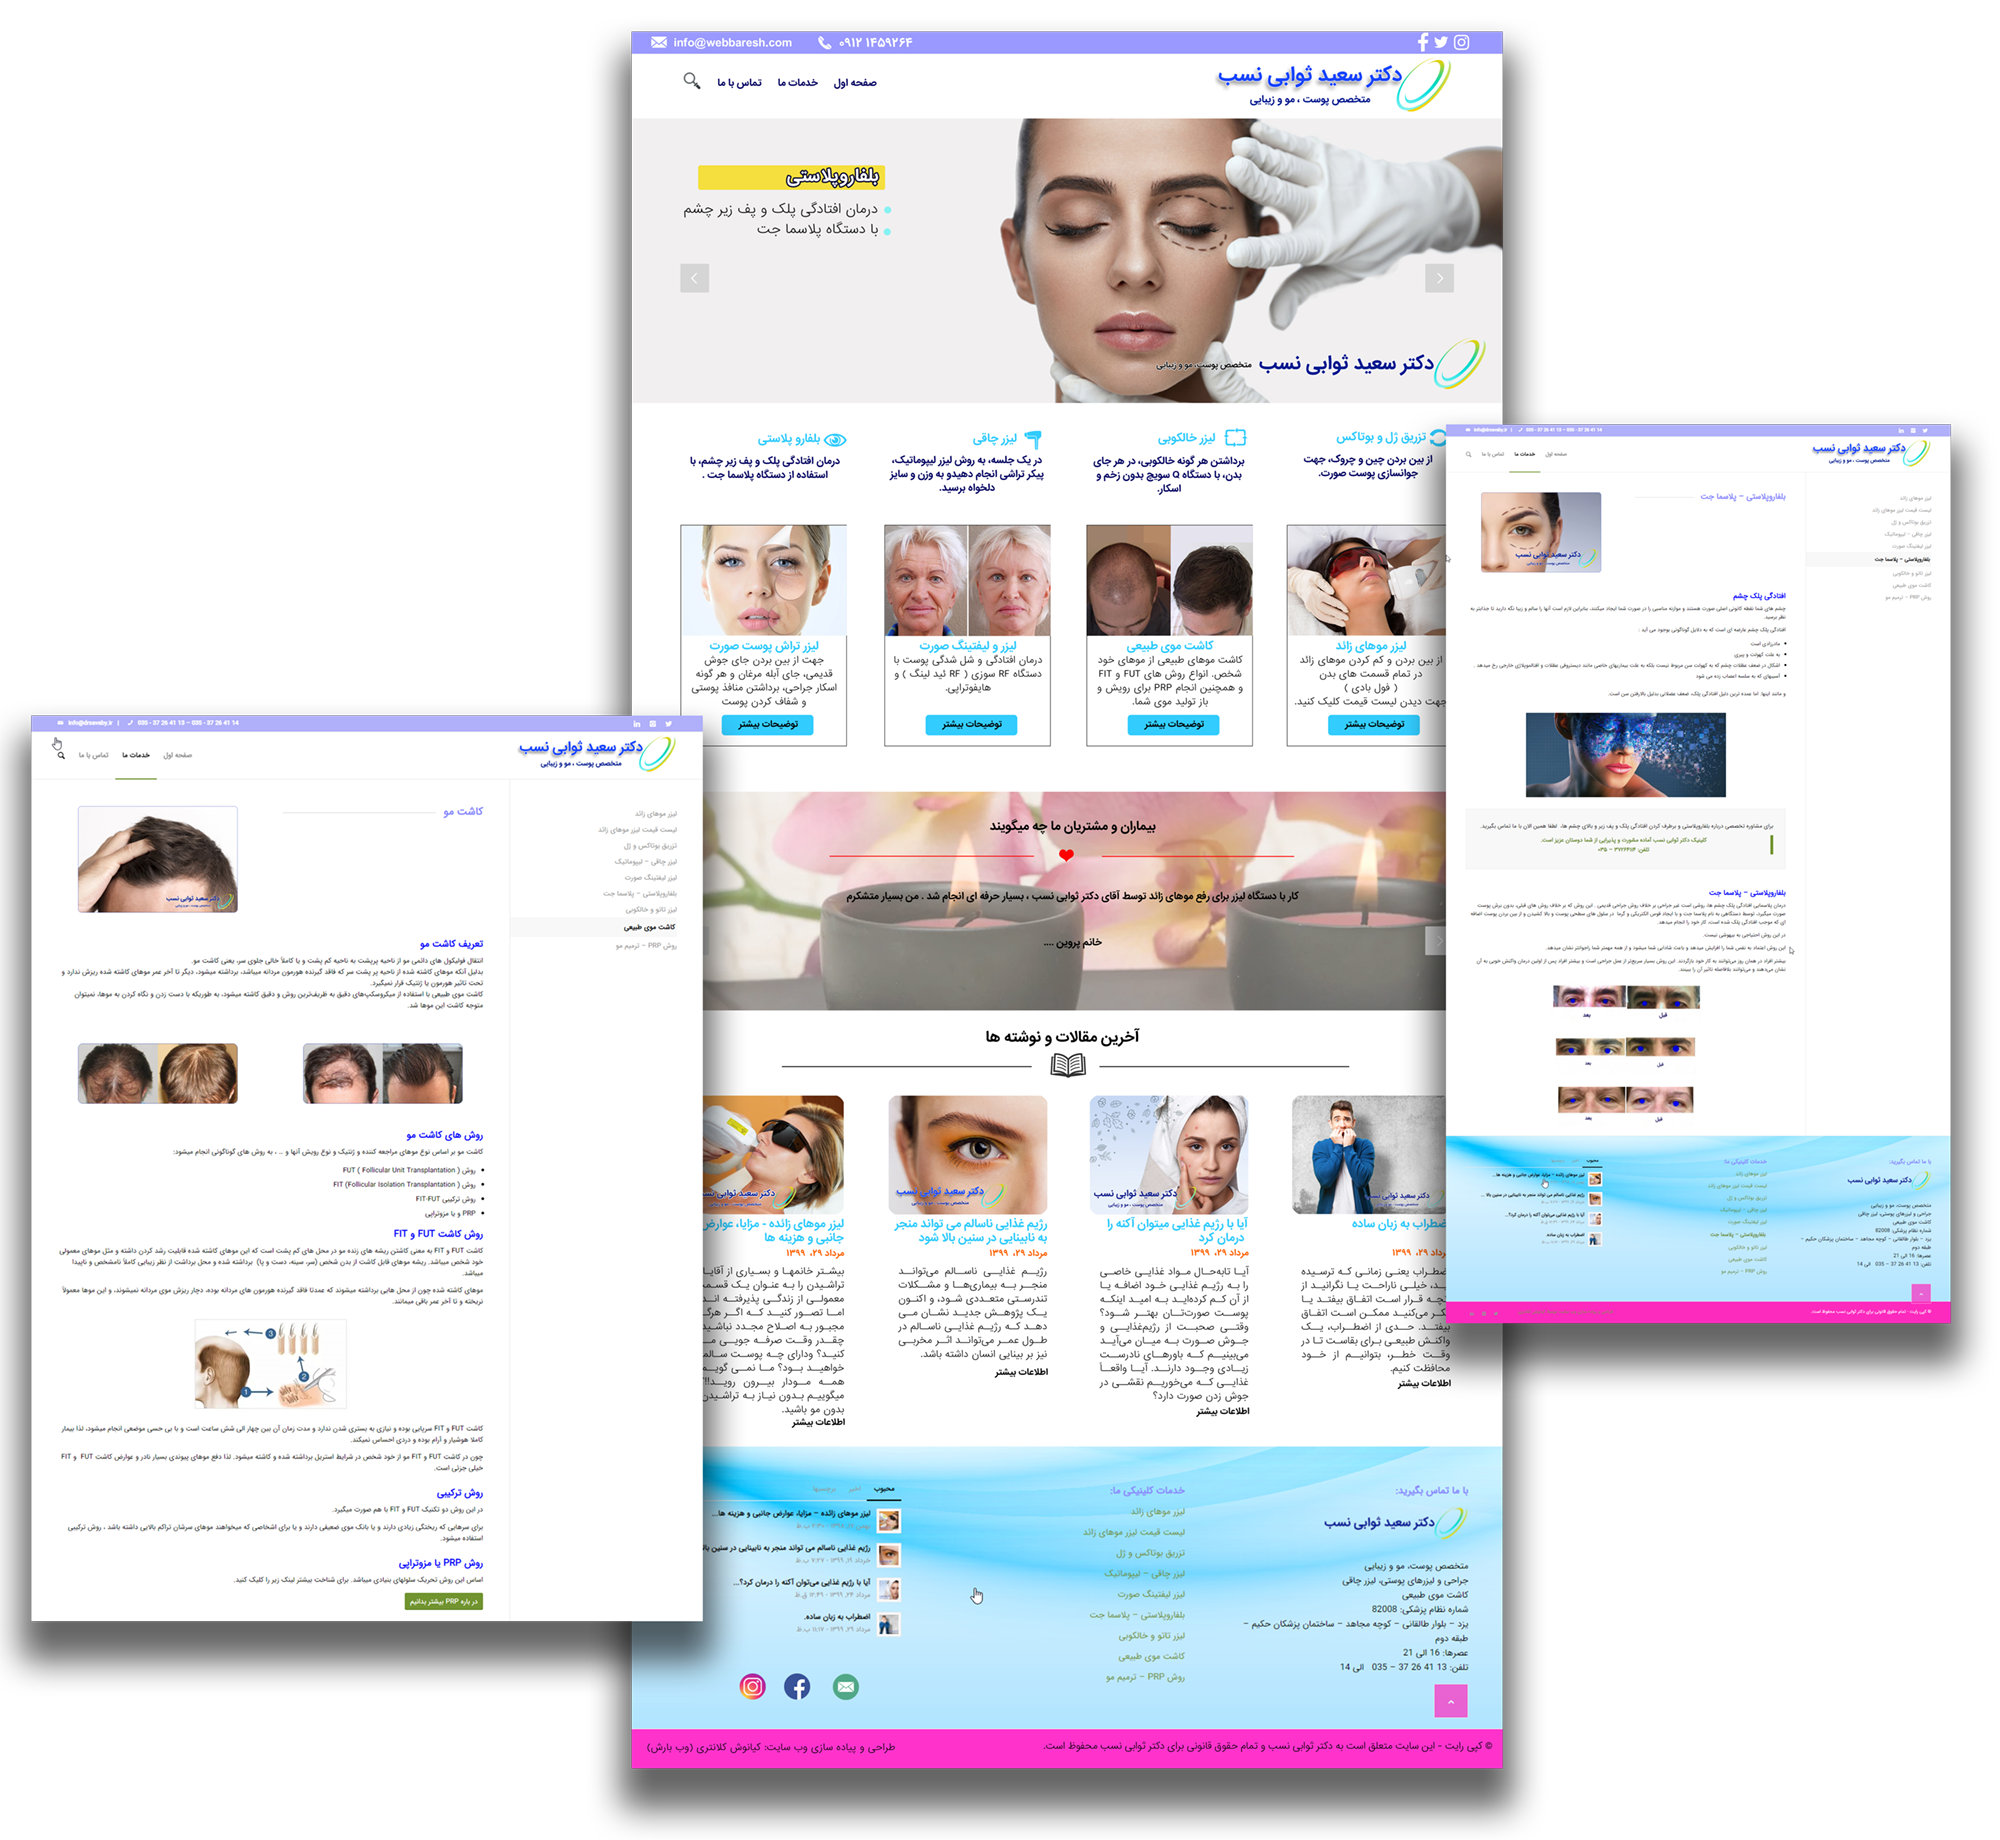 نمونه وب سایت دکتر ثوابی نسب-پوست و مو و زیبایی-طراحی و پیاده سازی توسط وبسایت وب بارش - کیانوش کلانتری